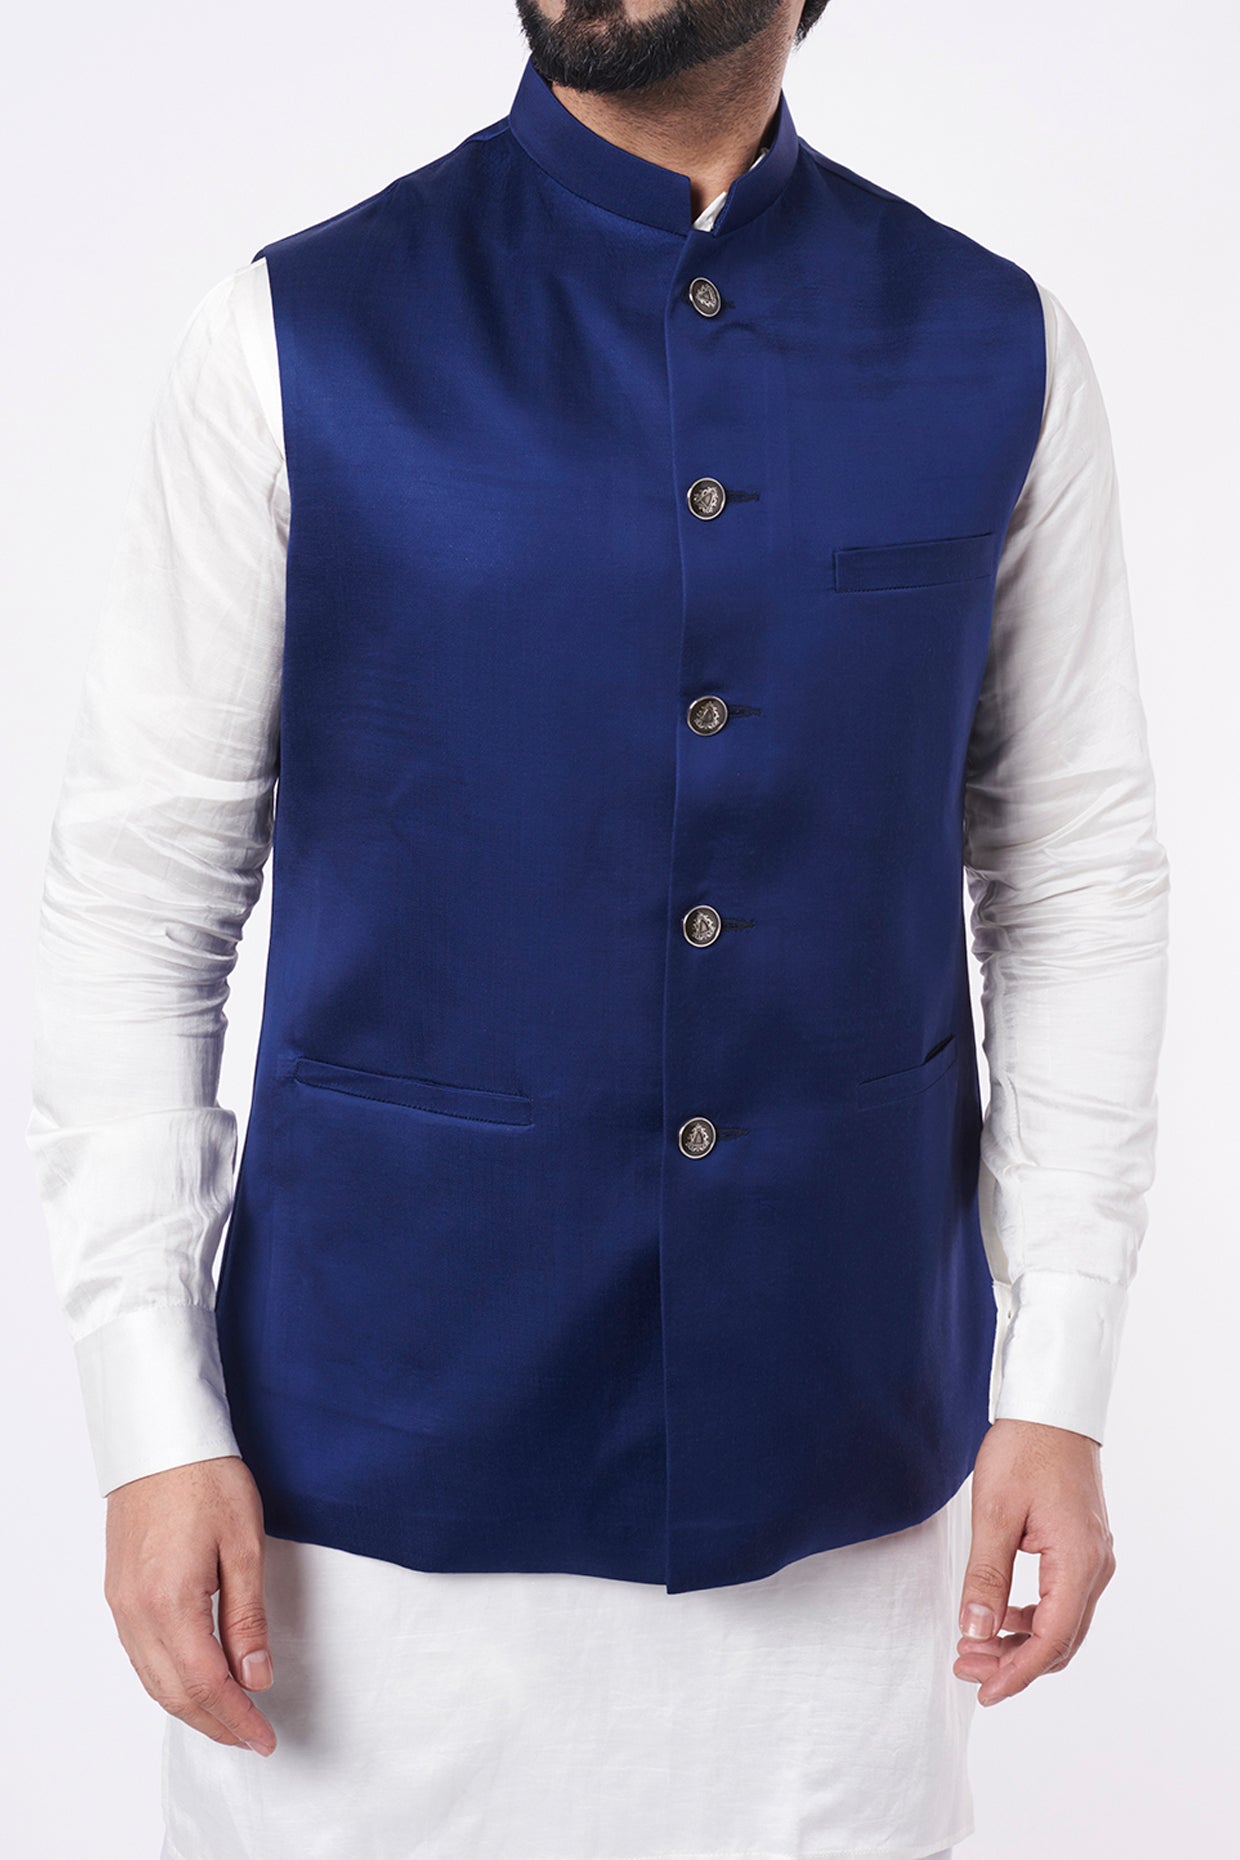 Men's Blue Color Nehru Jacket With Kurta Pant Set - Hilo Design | Nehru  jackets, Kurta with pants, Blue man